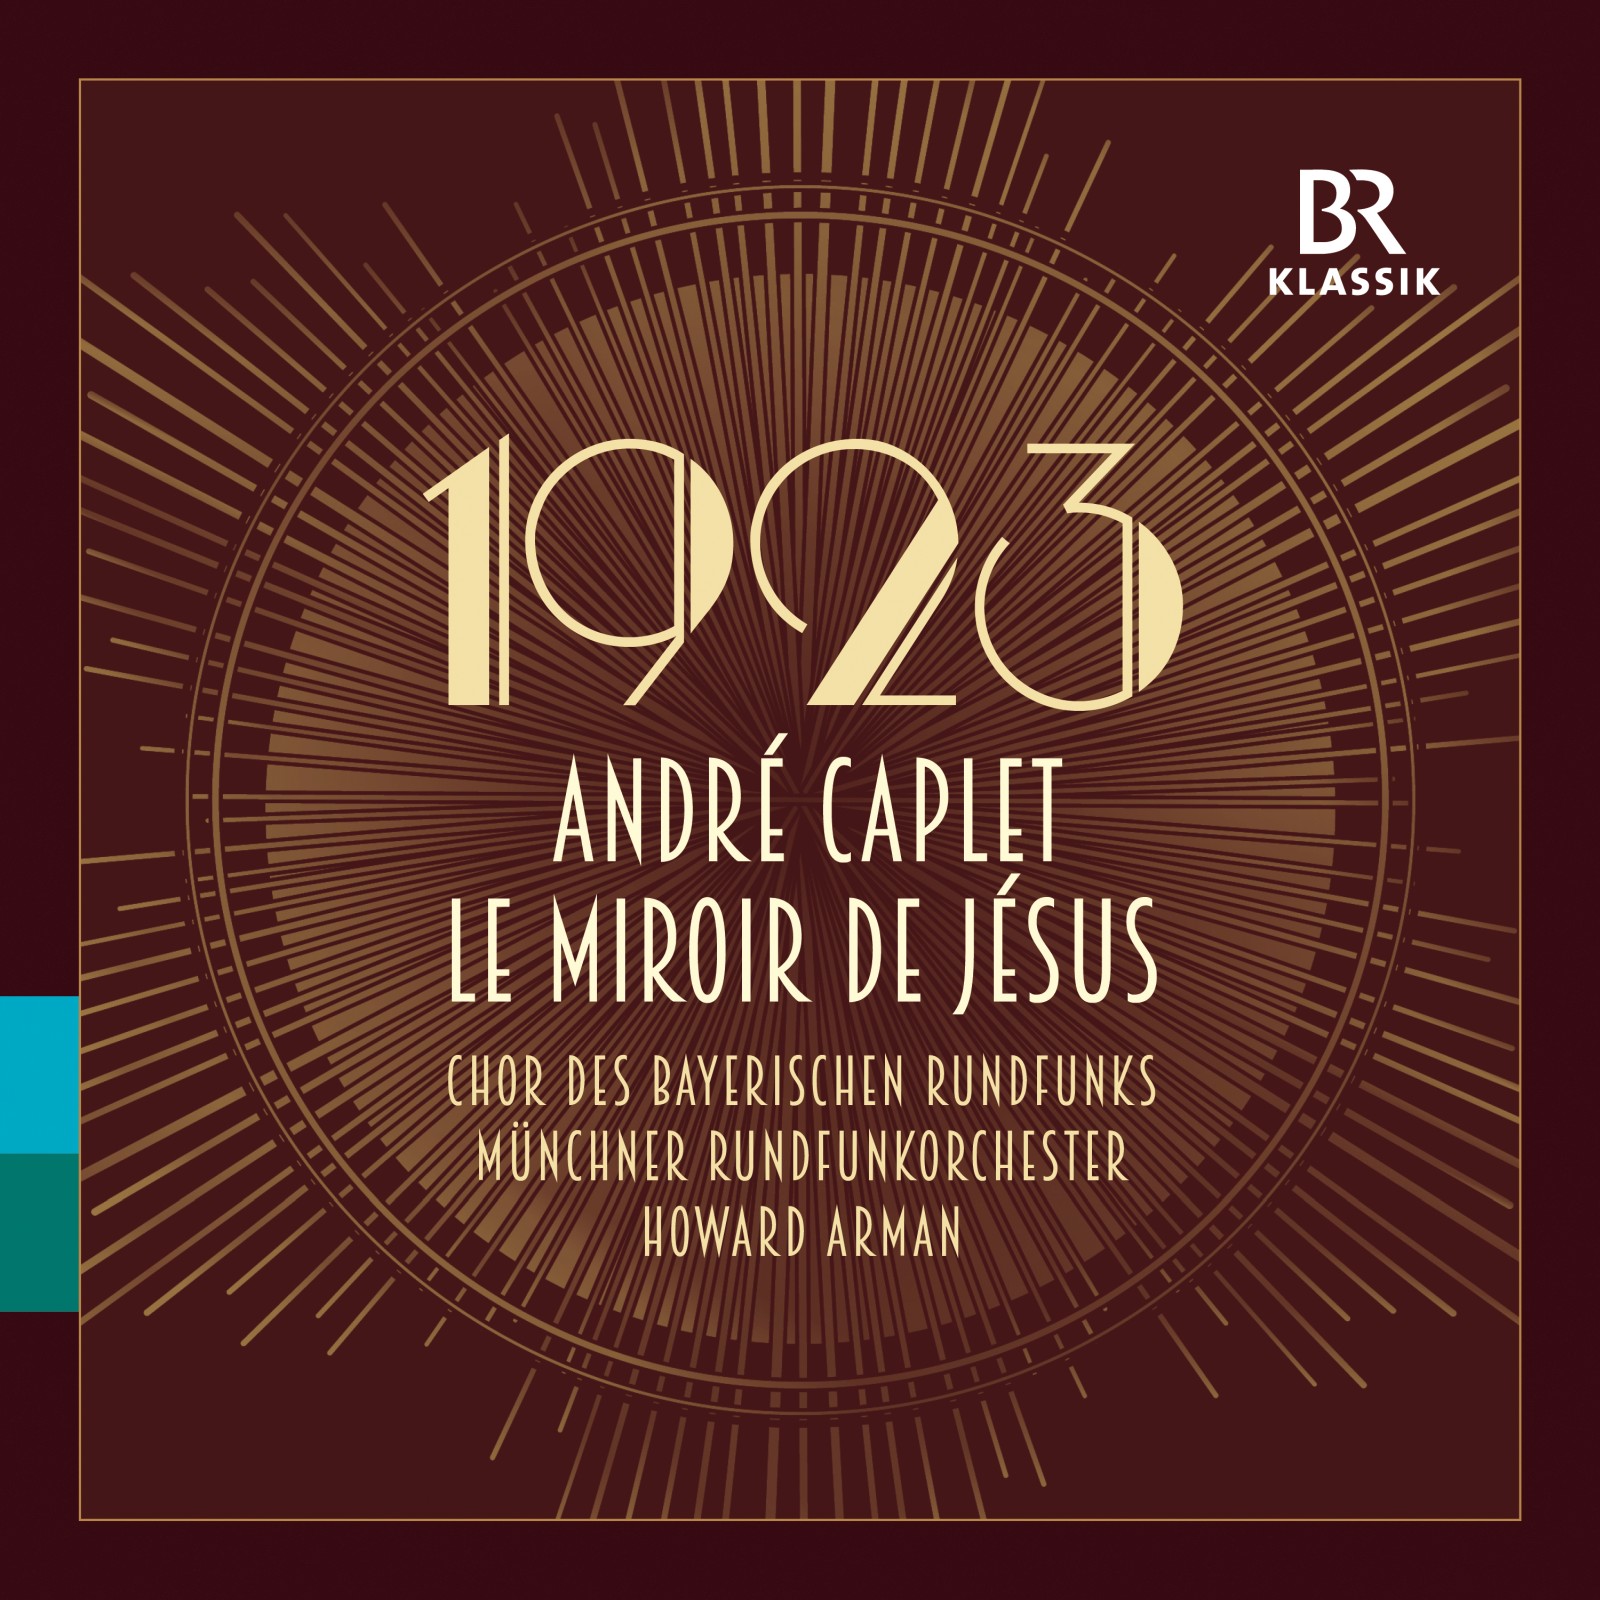 BR-KLASSIK 900342: André Caplet, Le miroir de Jésus